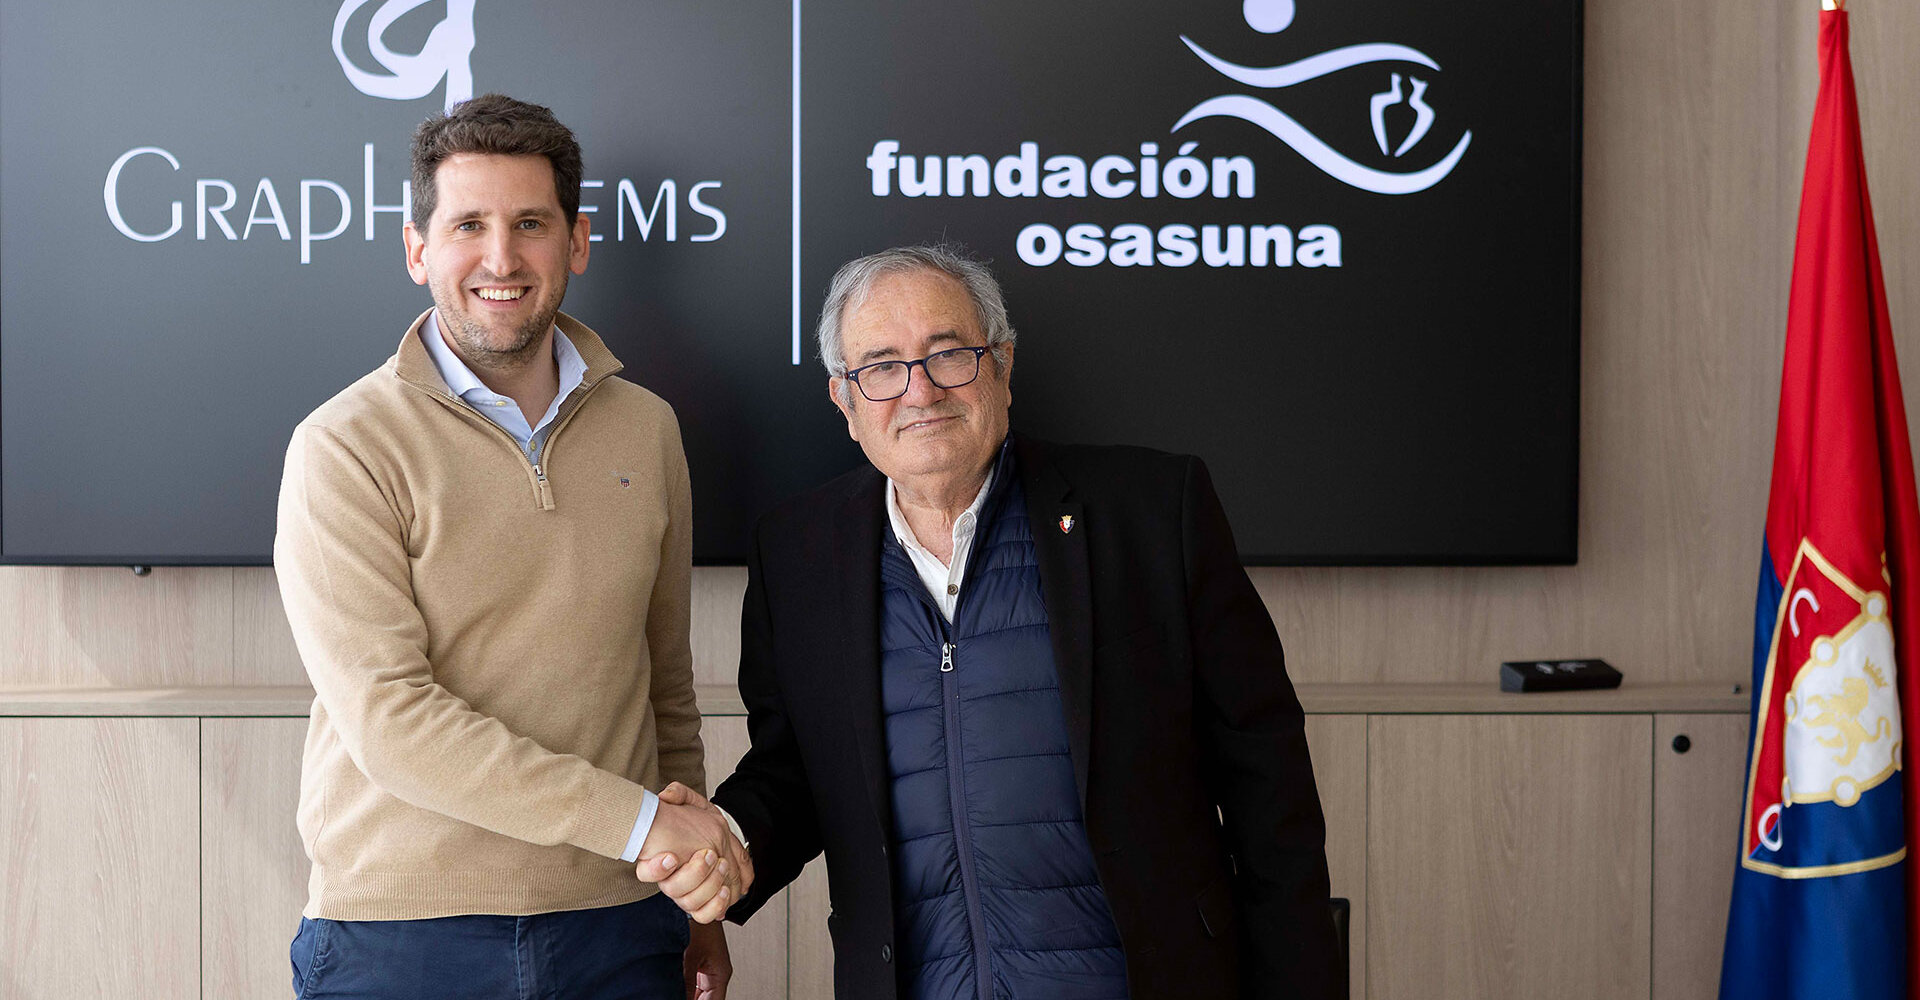 GraphyCems renueva su vinculación con Fundación Osasuna